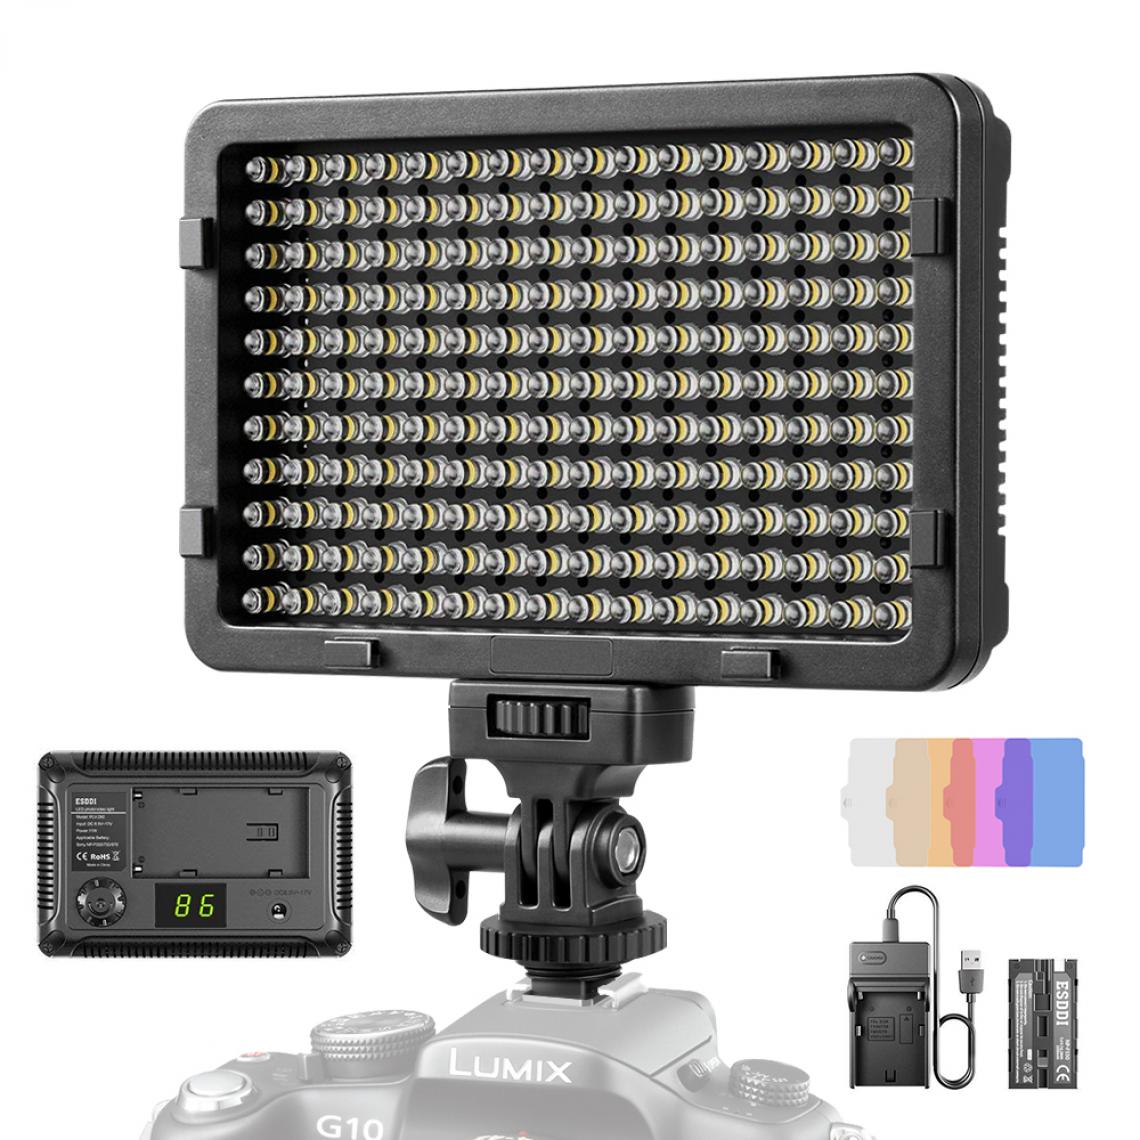 Esddi - ESDDI Video Light LED PLV-280, 176 LED Ultra Bright Dimmable CRI 95+ Camera Light avec jeu de piles et 5 Filtres de Couleur pour Appareils Photo Reflex Numériques et Supports - Lampe connectée